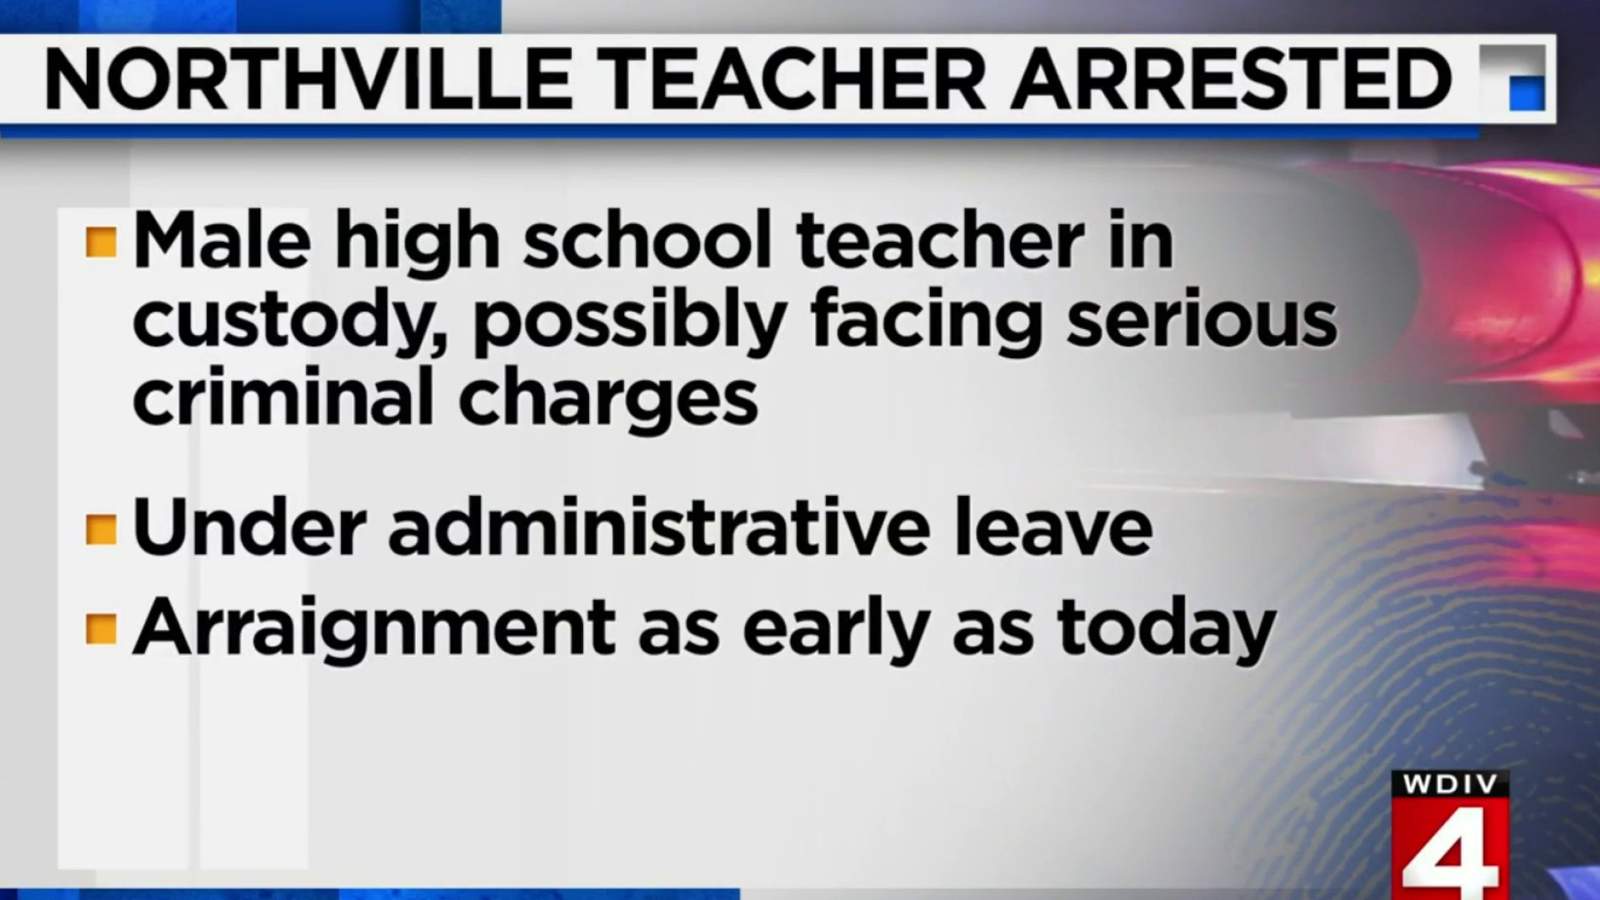 Northville Public Schools teacher arrested, faces ‘serious allegations’